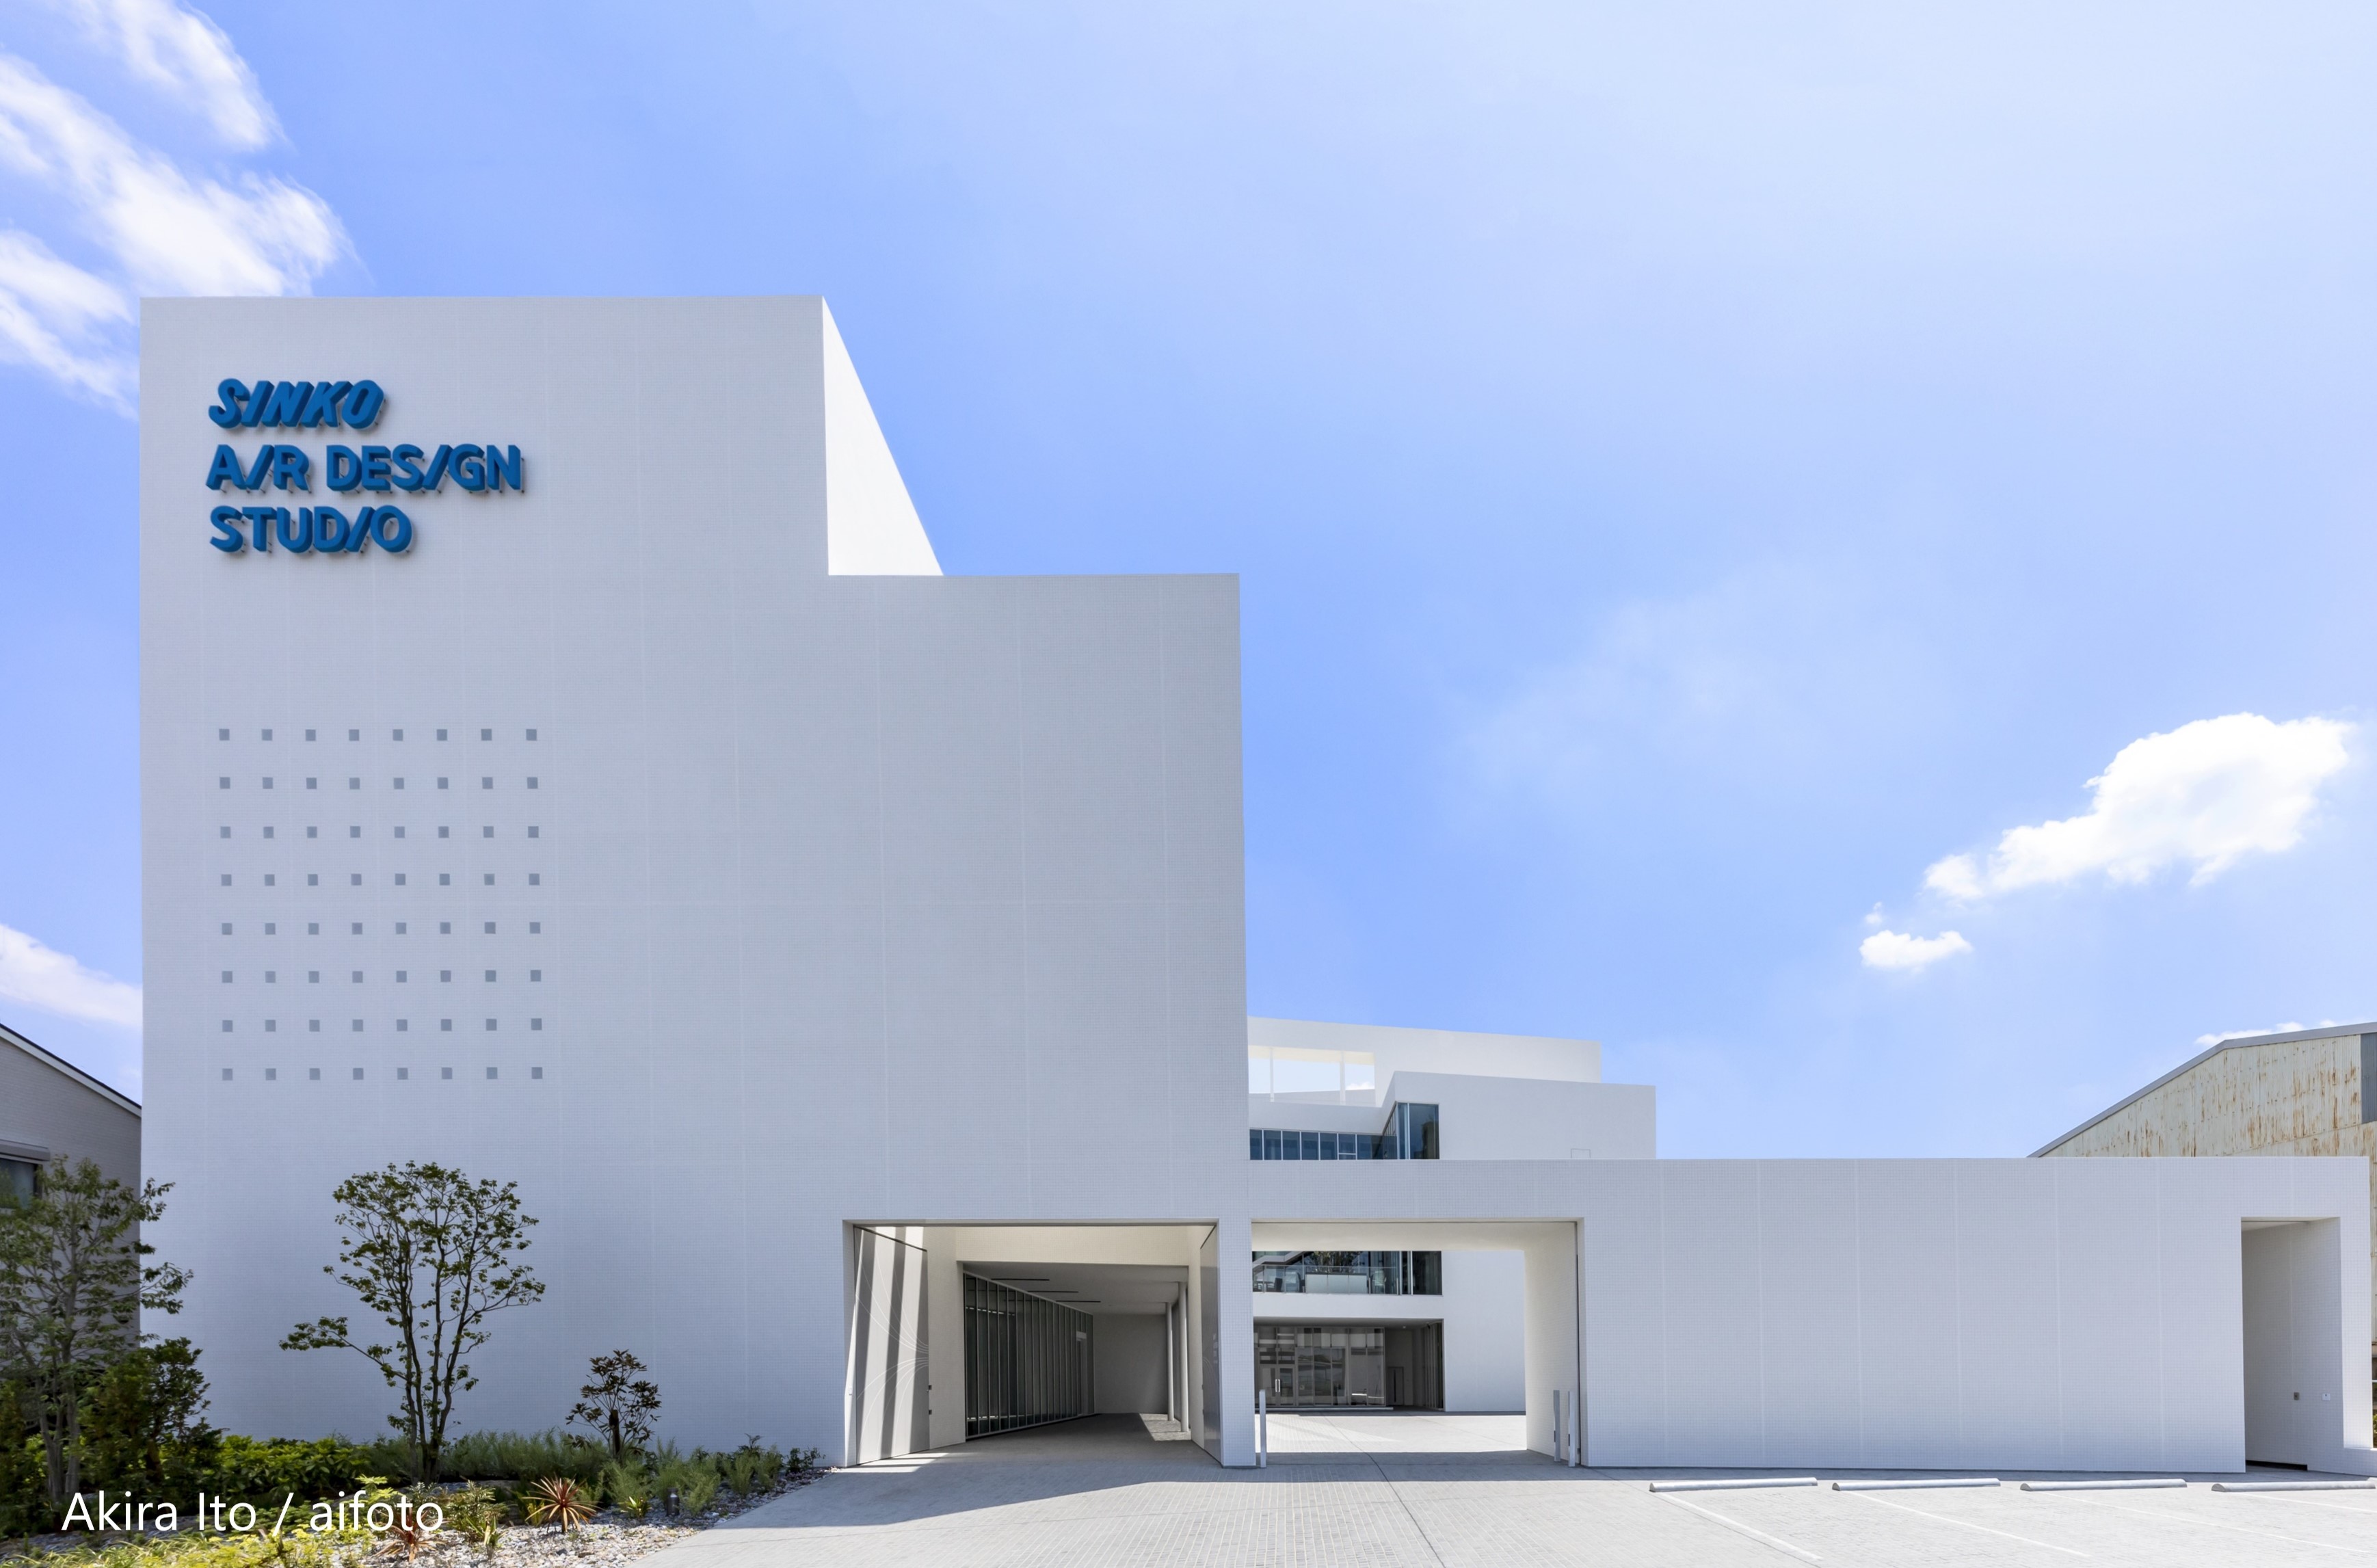 2020年4月1日 大阪に新しいショールーム「SINKO AIR DESIGN STUDIO」がオープンしました